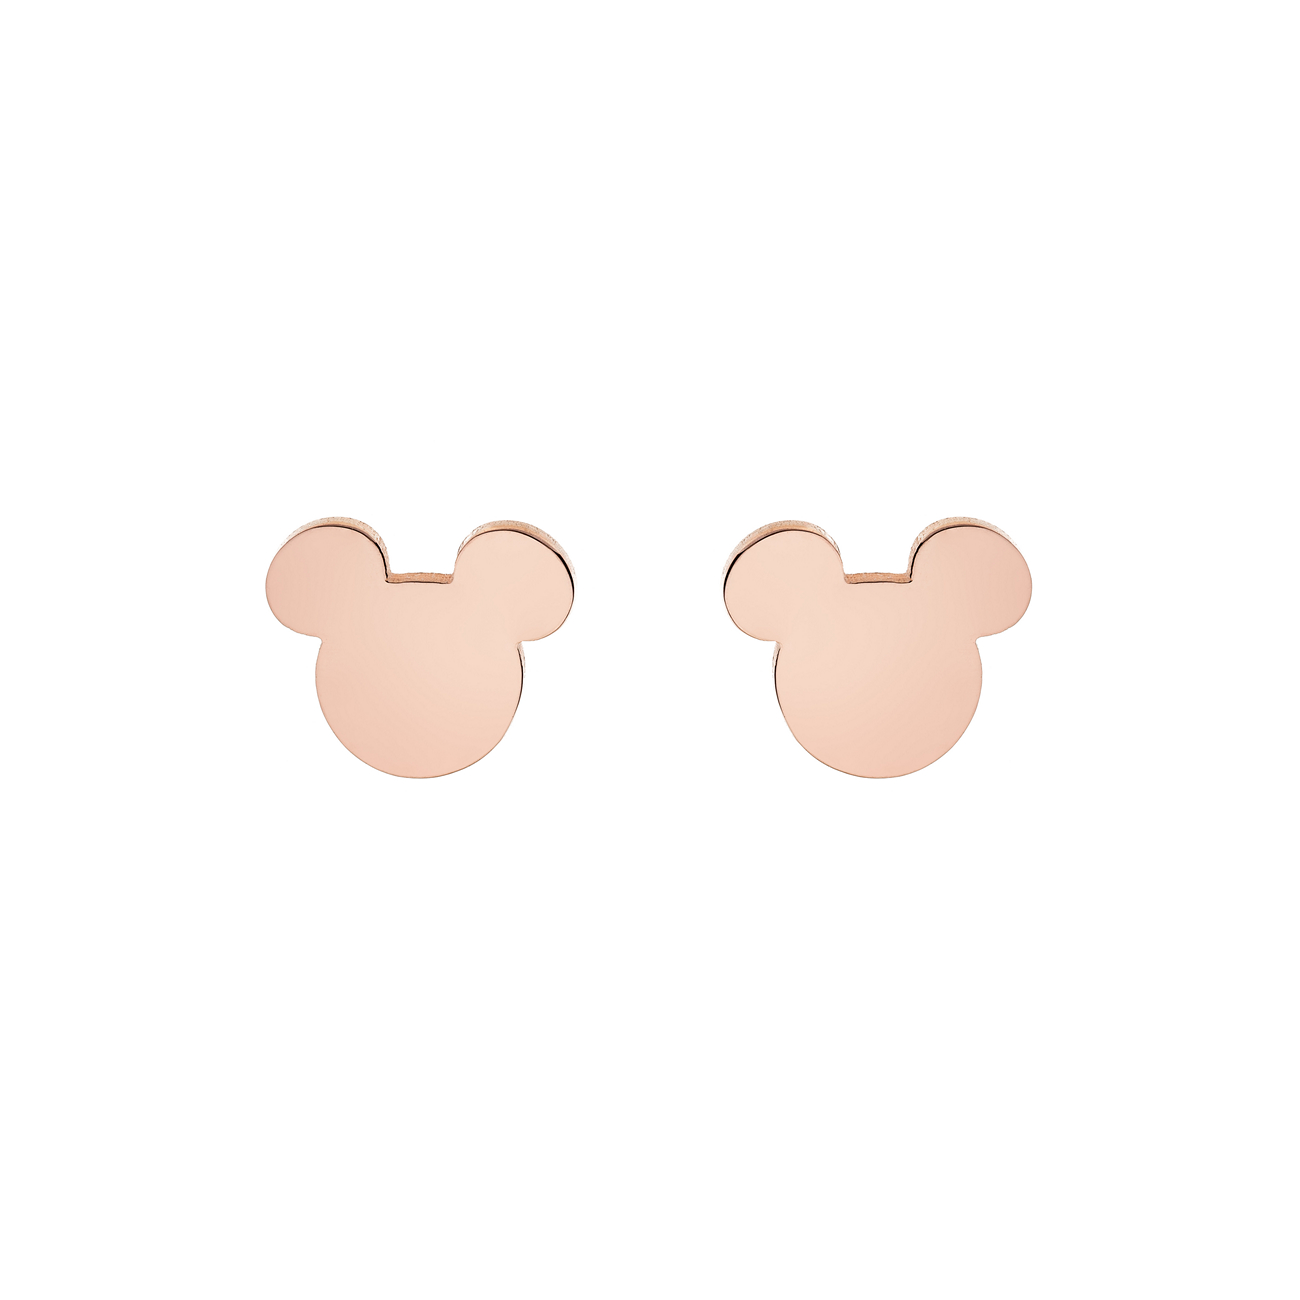 Πρώτη φωτογραφία του "Ατσάλινα ροζ επίχρυσα σκουλαρίκια Mickey"